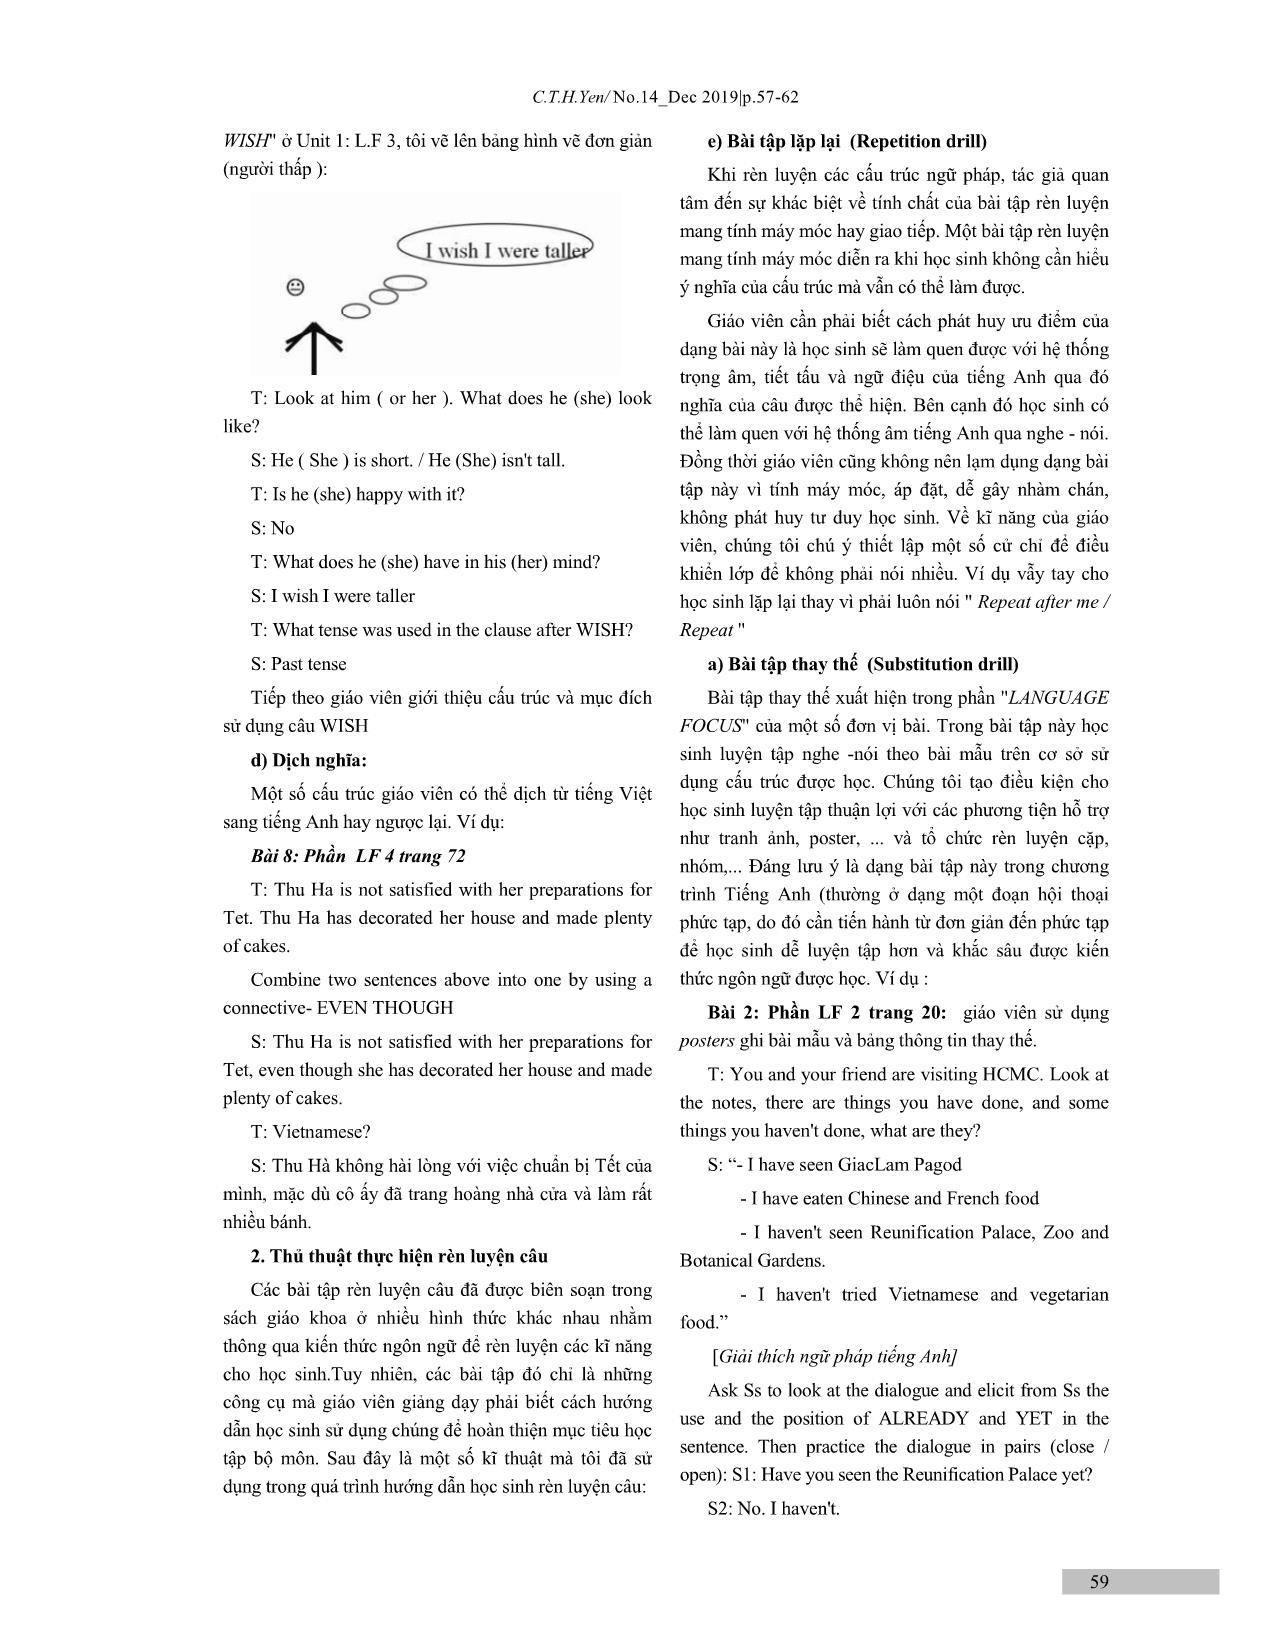 Một số thủ thuật dạy phần Language Focus trong sách Tiếng Anh lớp 9 trang 3